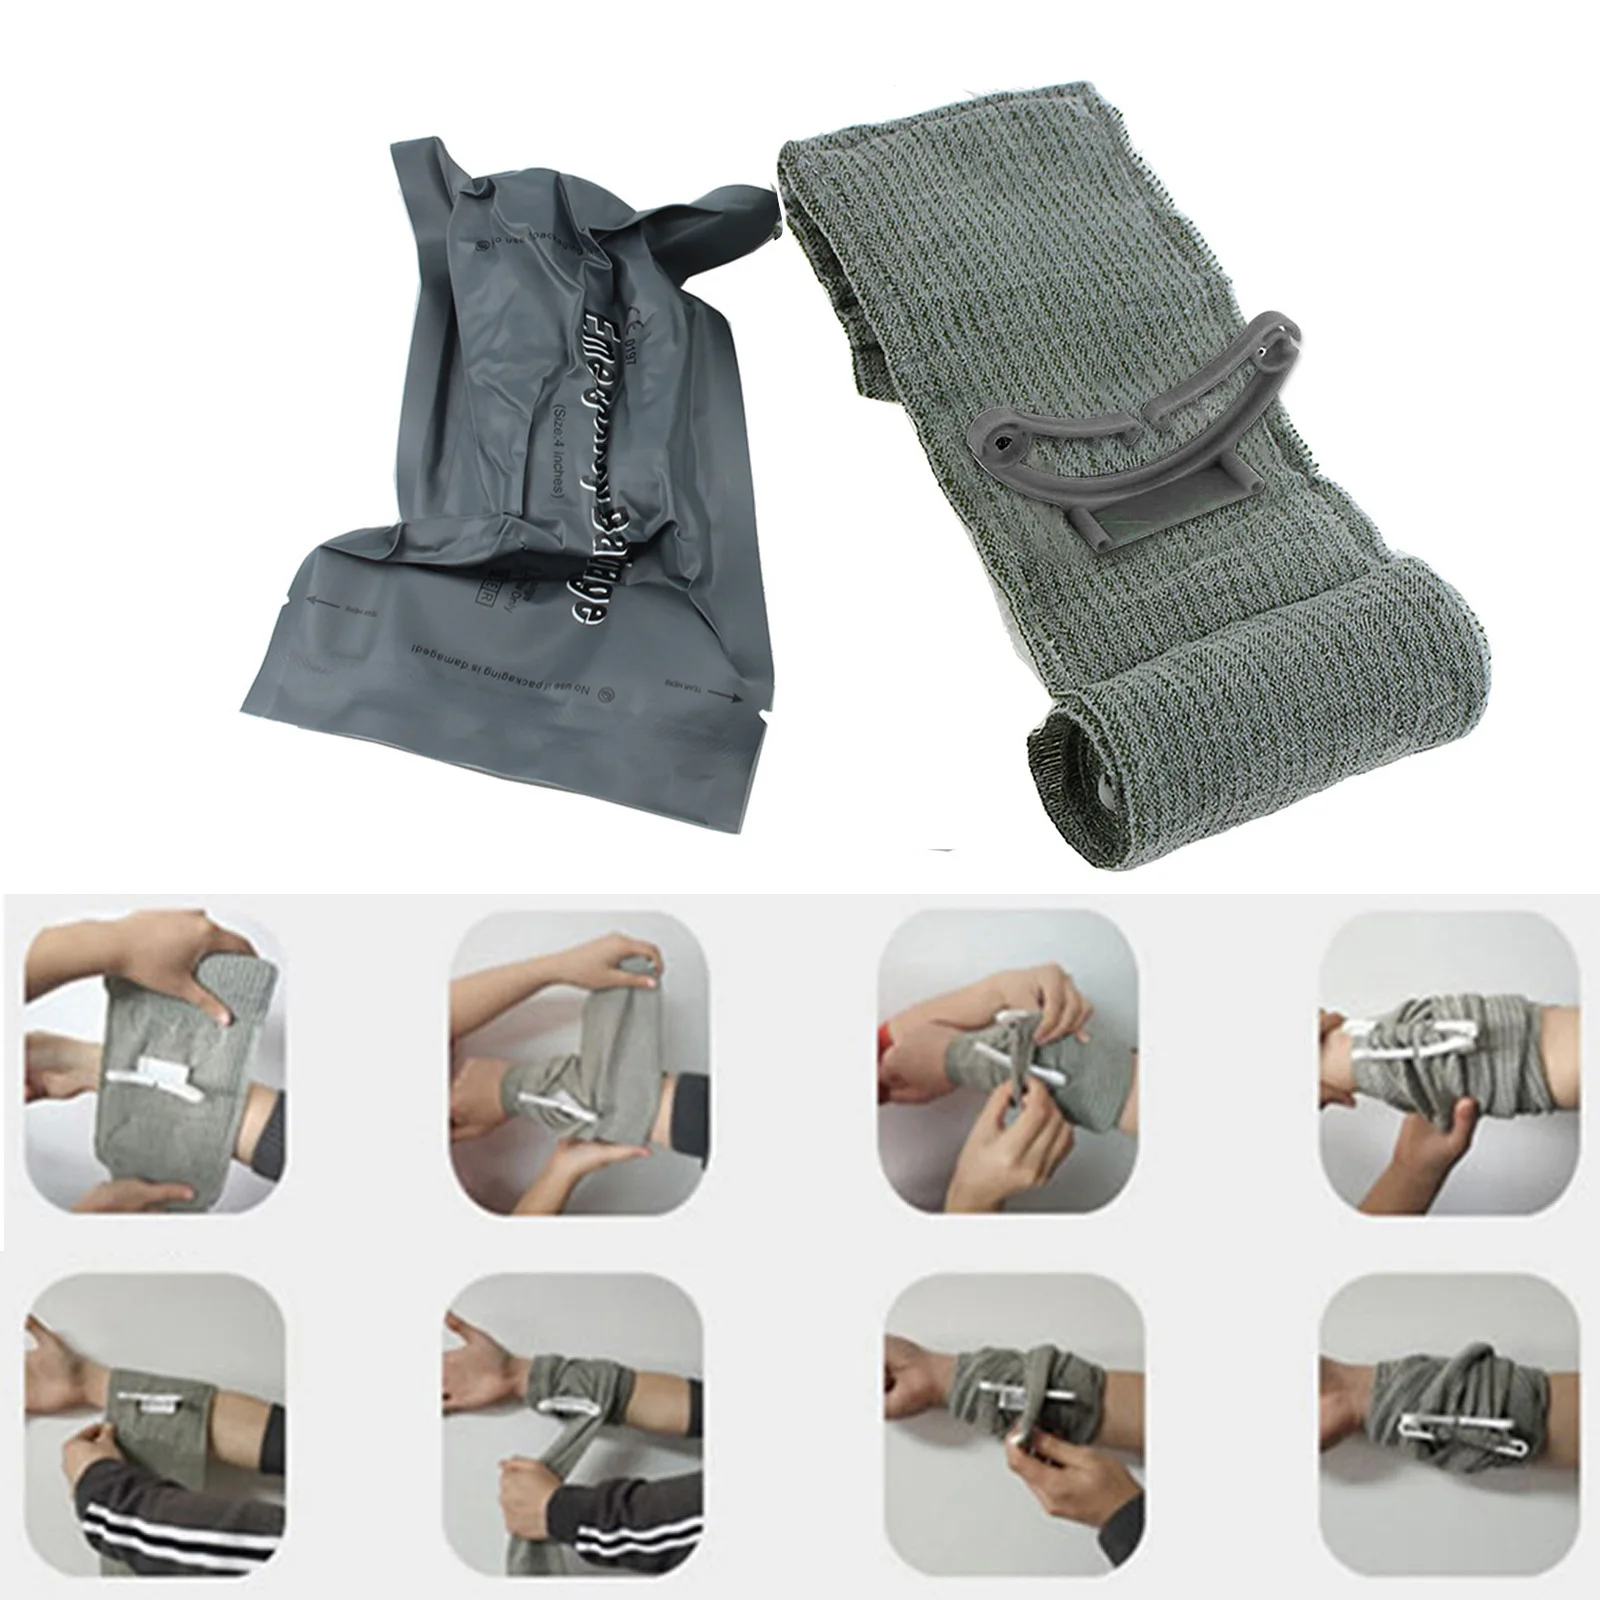 Israel Military Industriesisraeli Bandage Trauma Kit - 1-20pcs